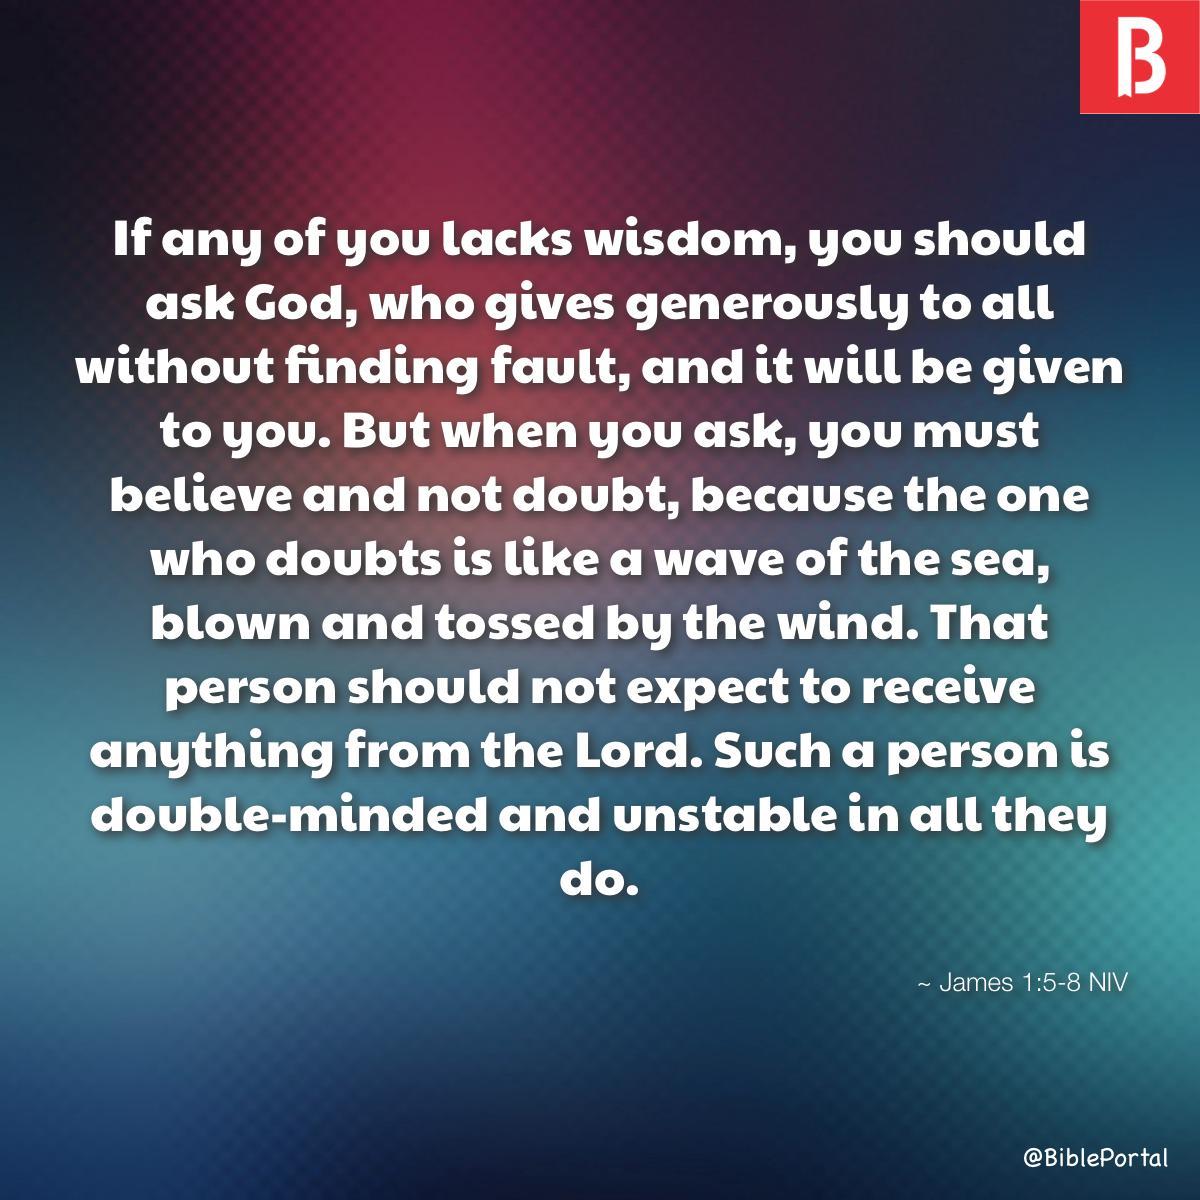 James 1:5-8 NIV